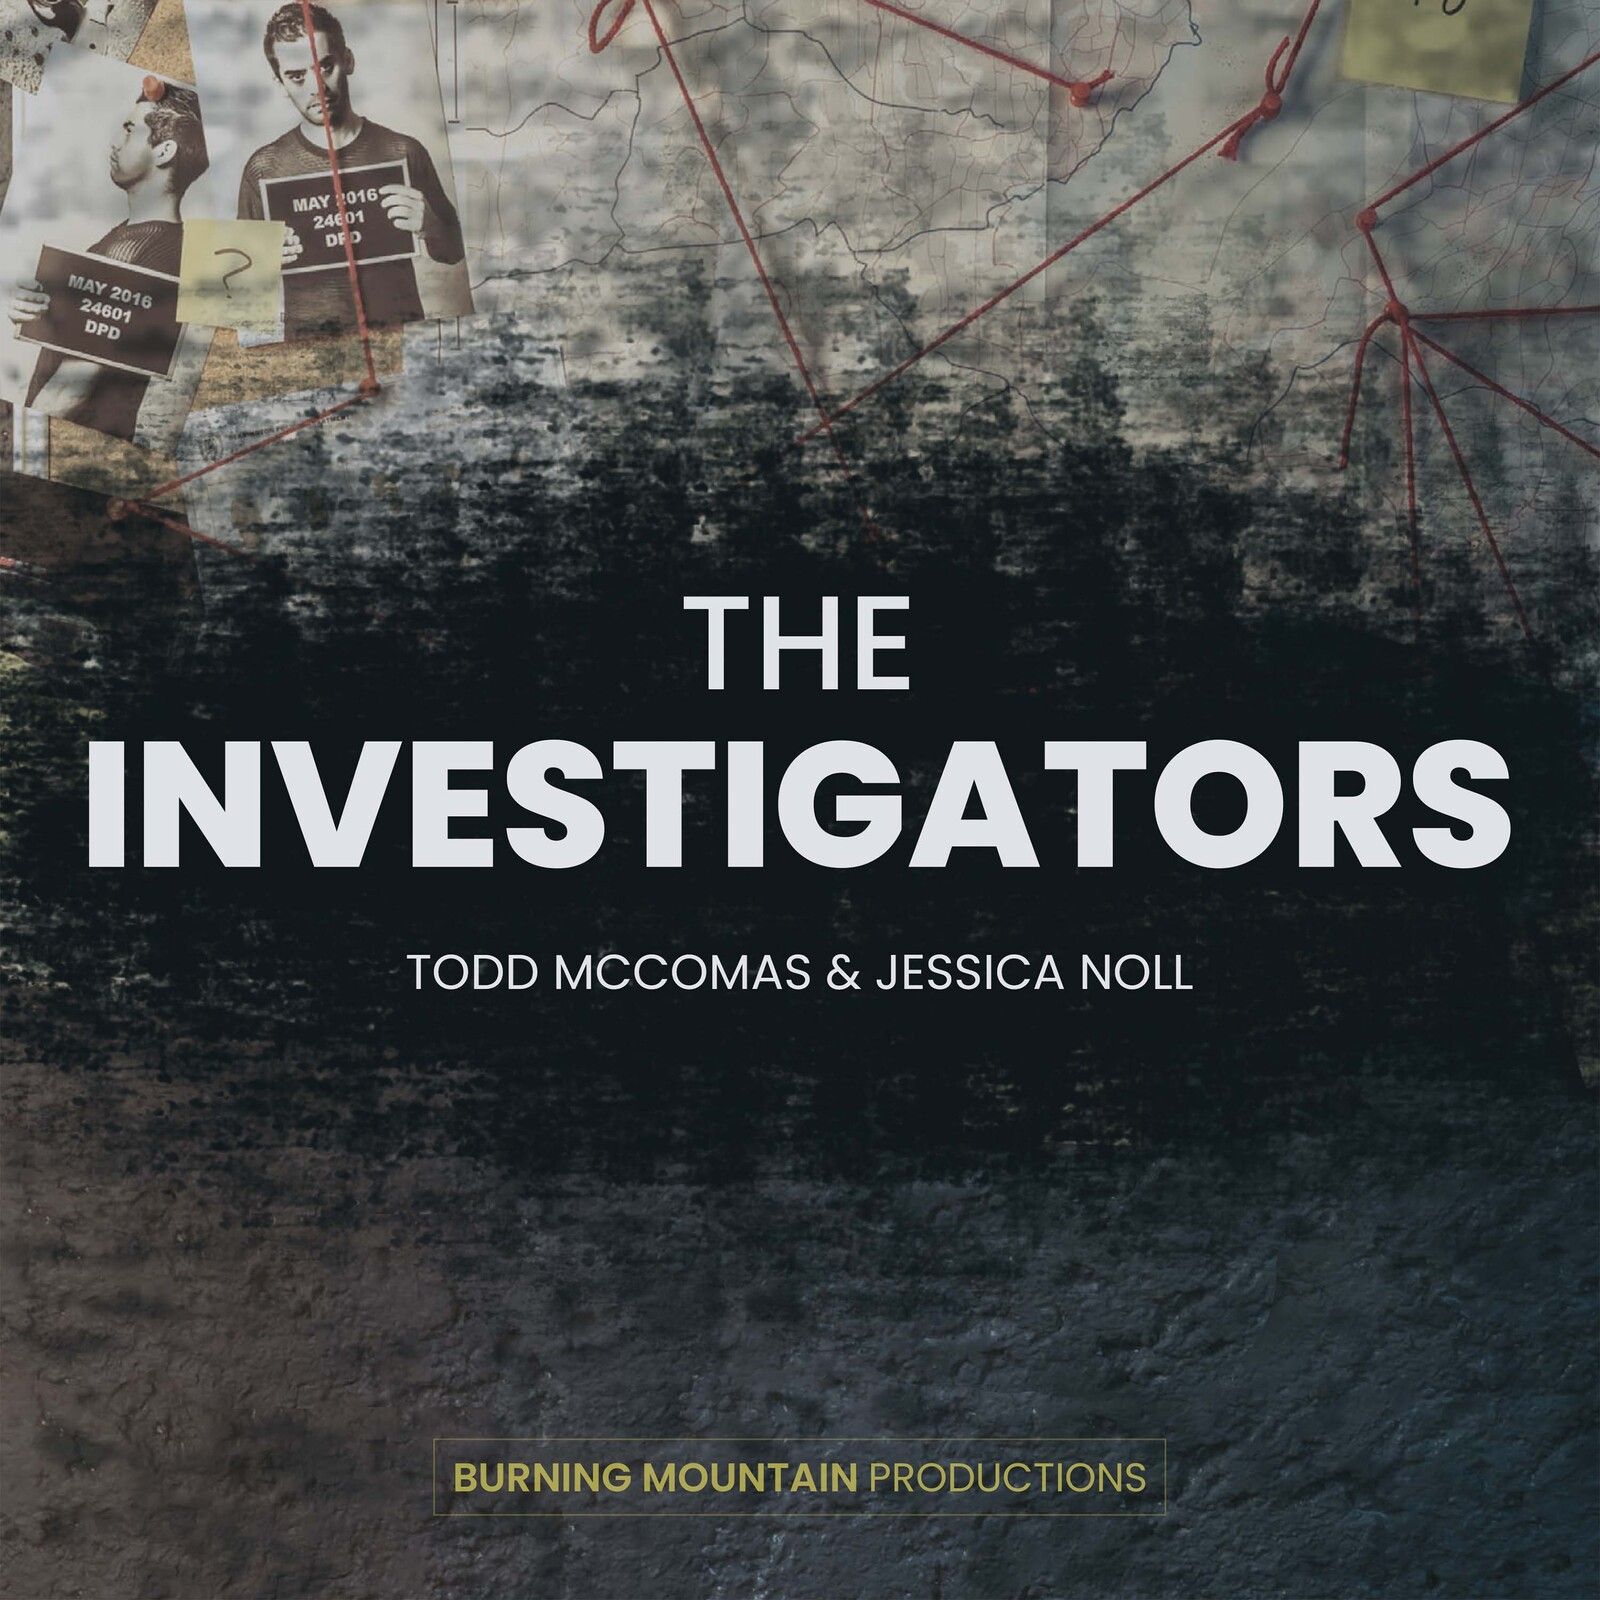 Trailer: Intro to The Investigators